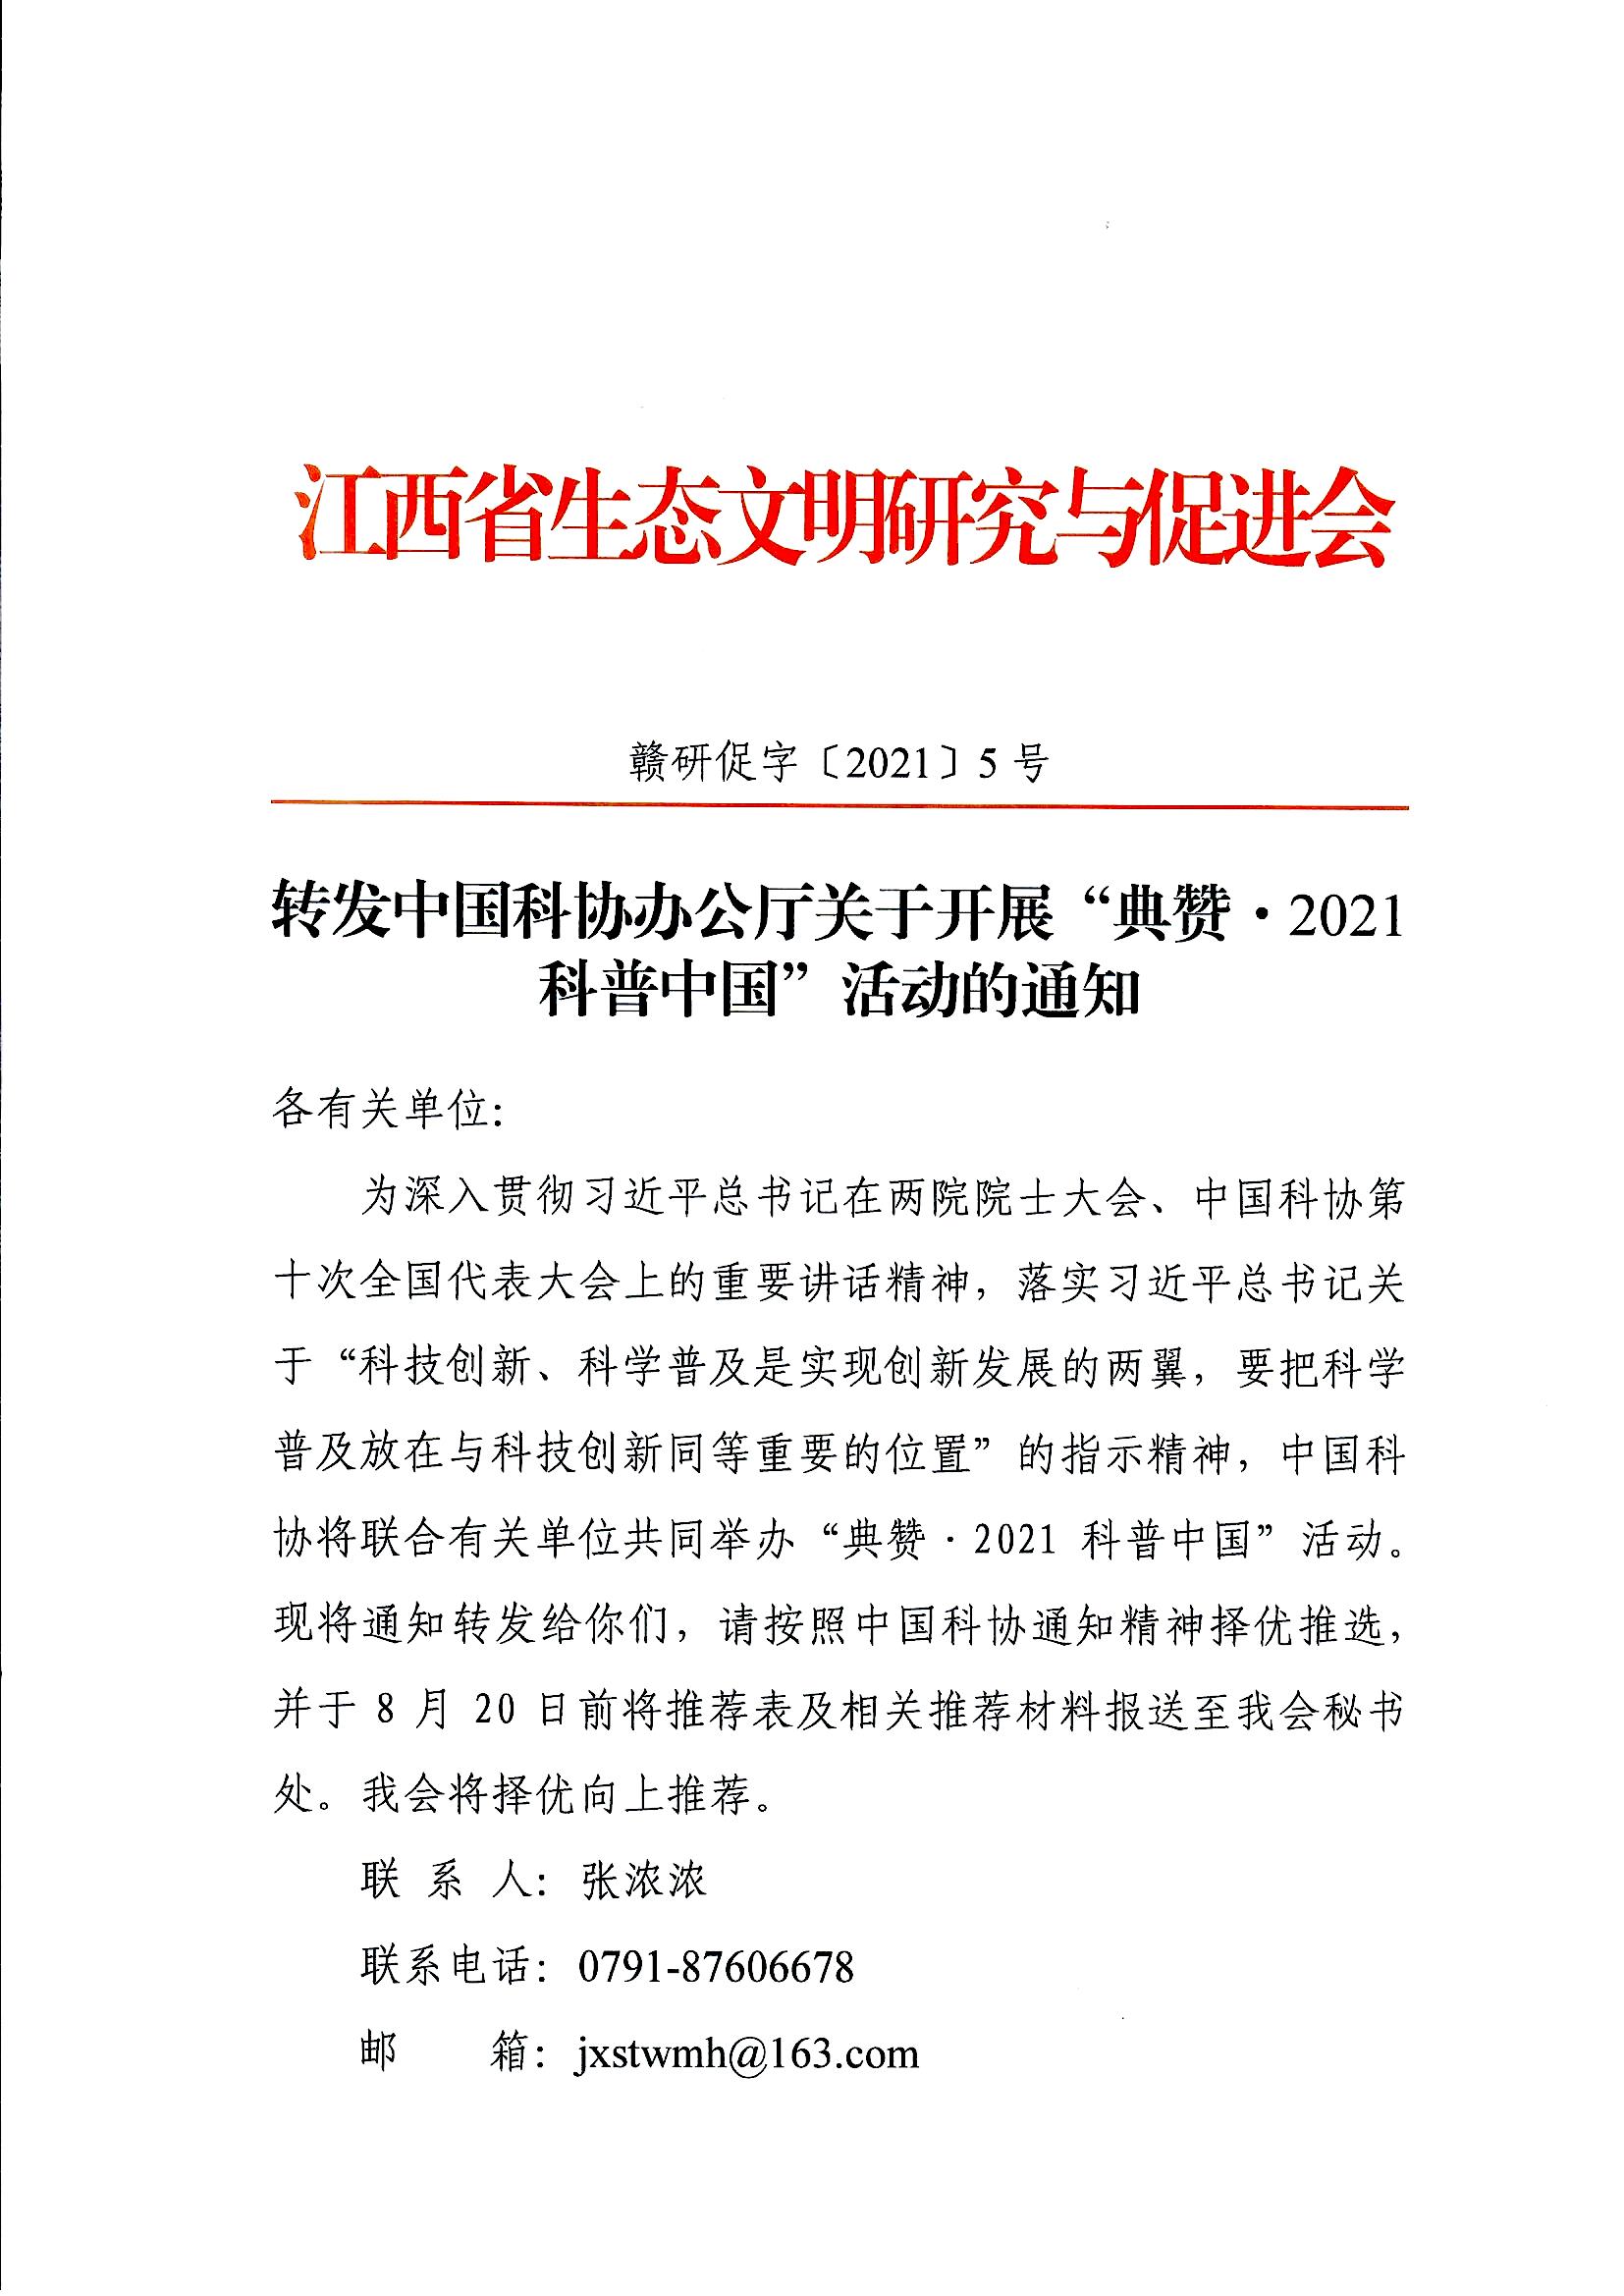 页面提取自－转发中国科协办公厅关于开展“典赞•2021科普中国”活动的通知11_页面_1.jpg